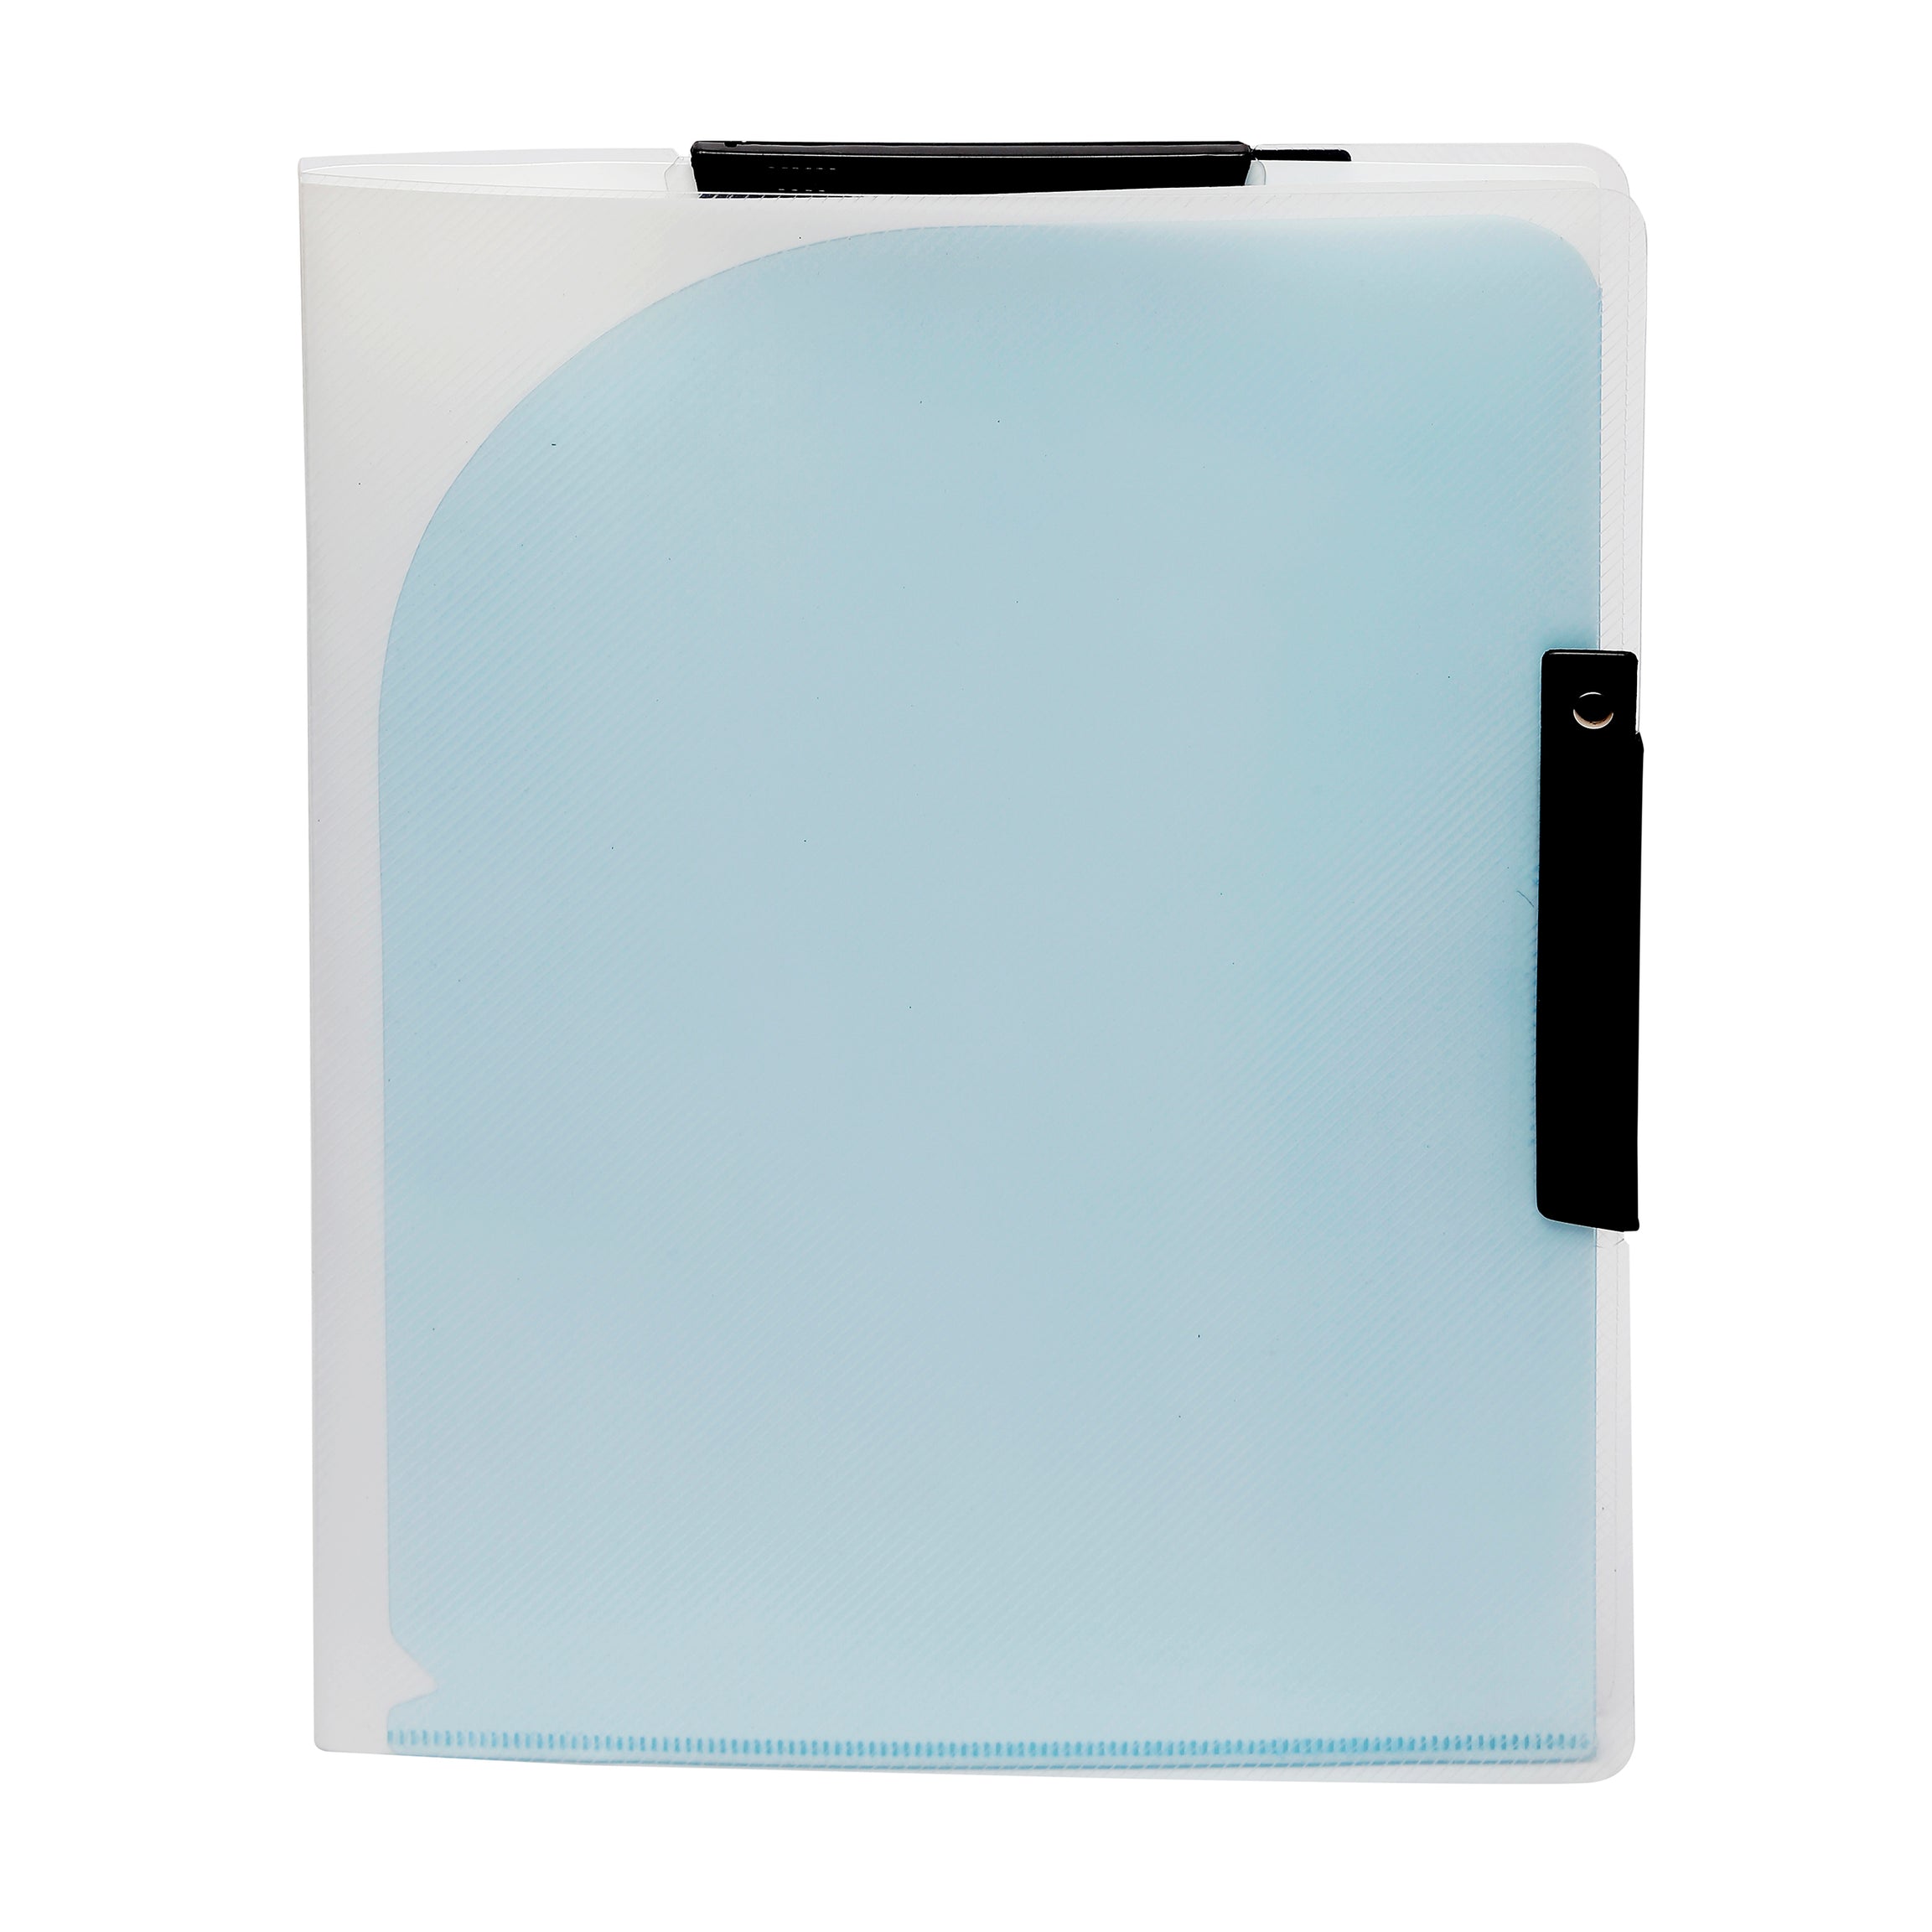 Eslee Document Folder | 4 Pockets Plastic Folder | A4 Size